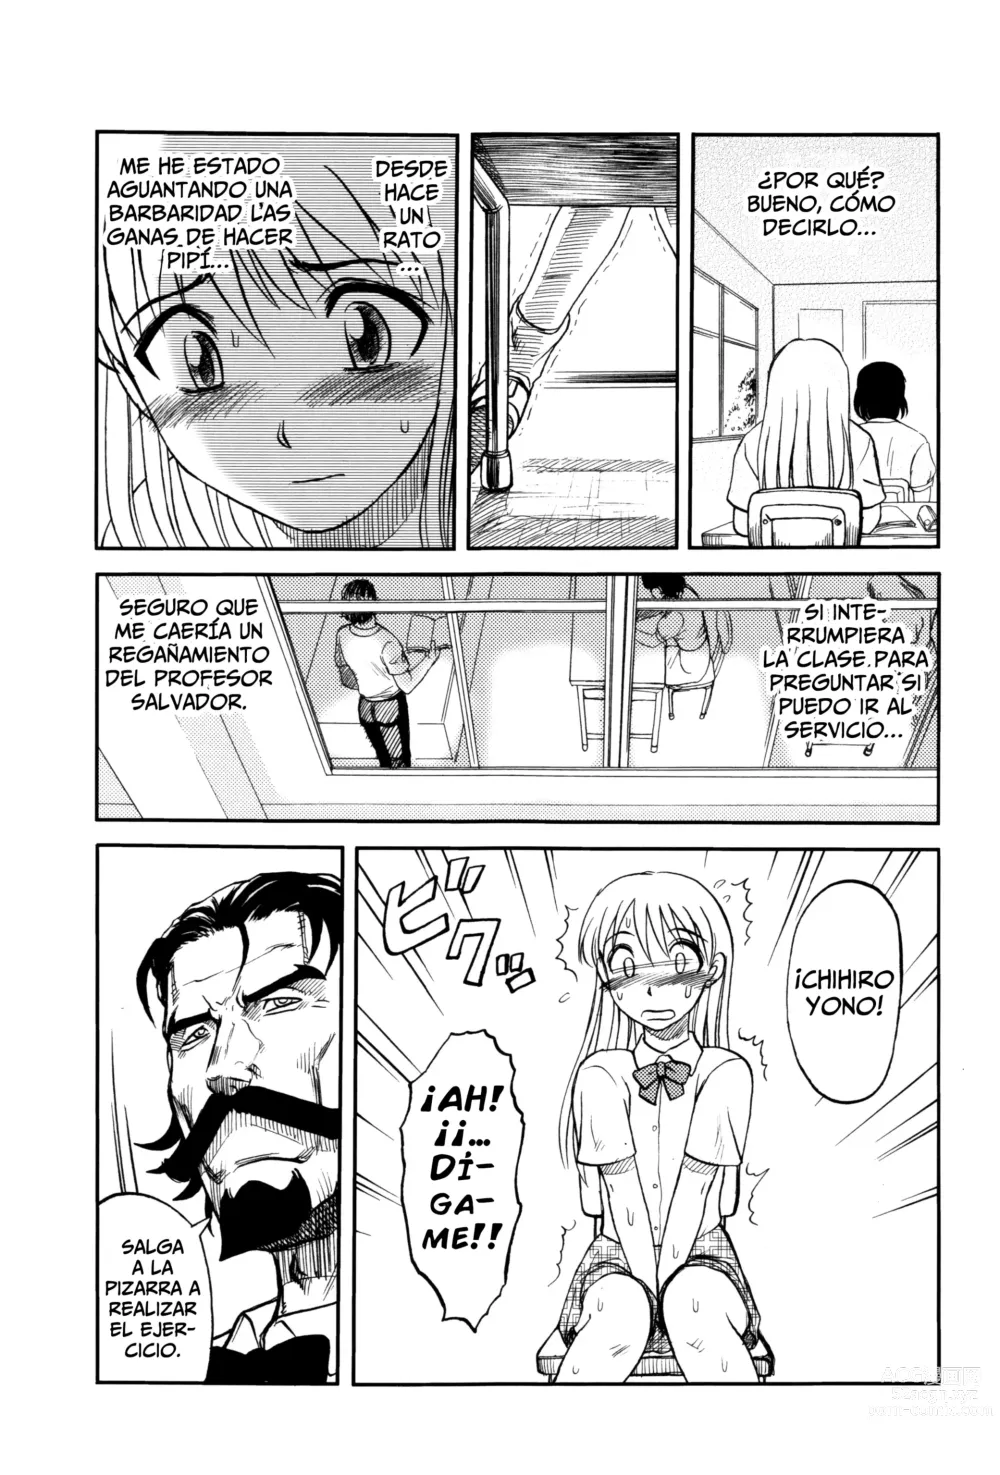 Page 9 of manga El Profesor Salvador Dice Que La Letra Con Sangre Entra